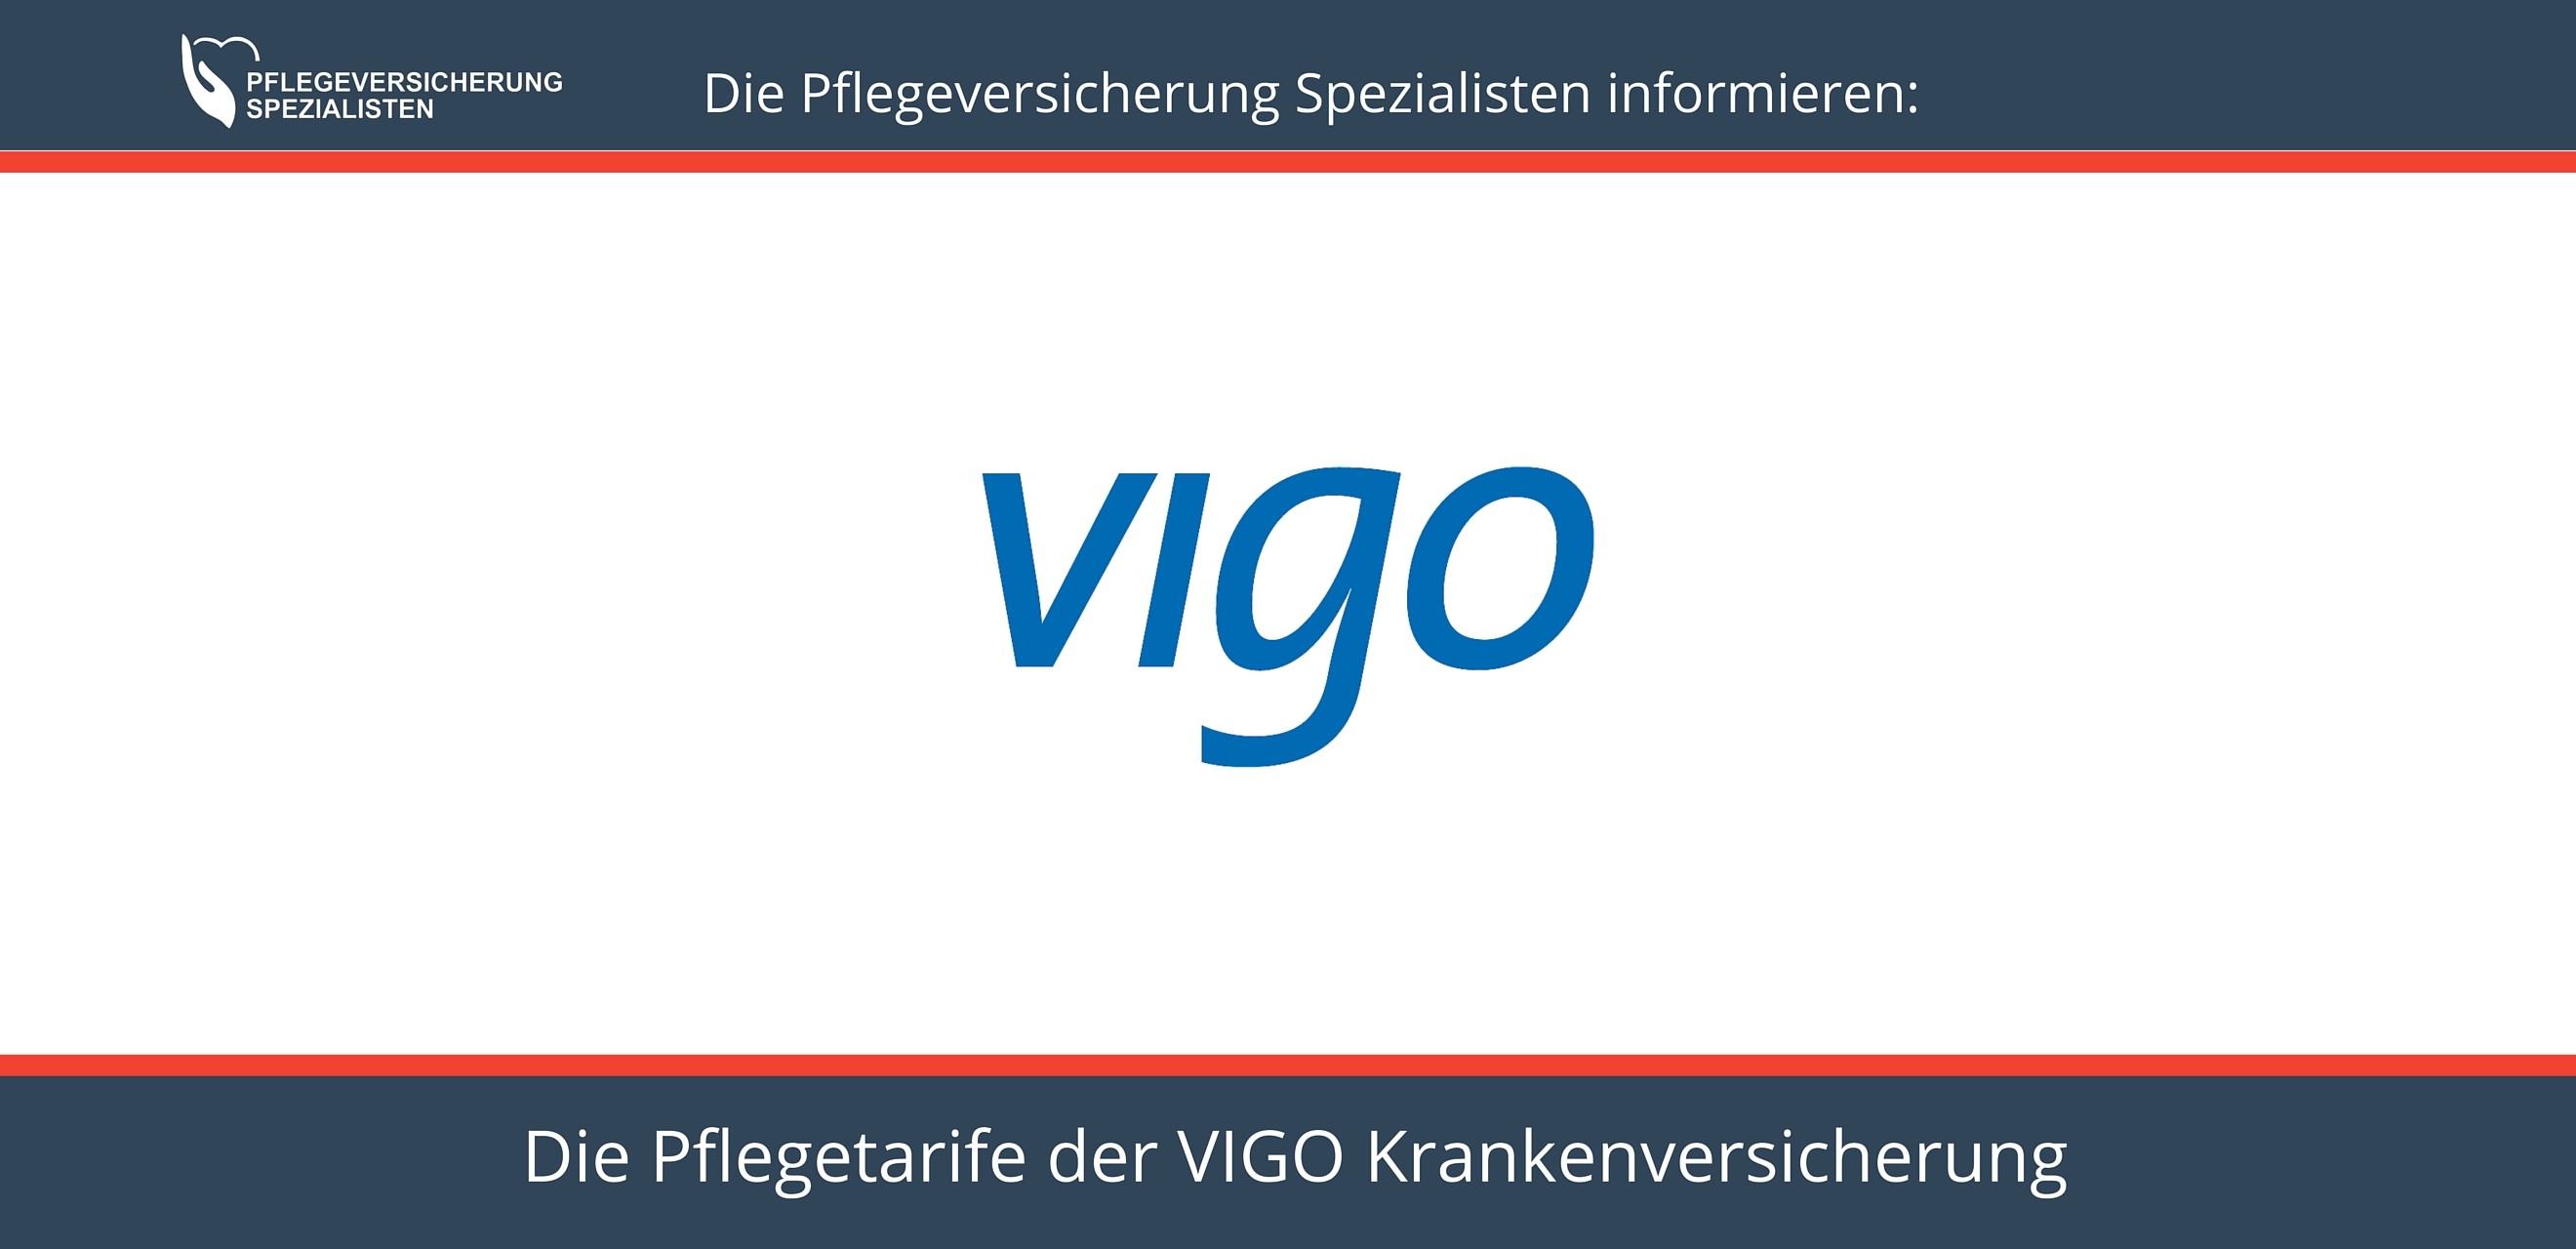 Die Pflegeversicherung Spezialisten informieren - Pflegeversicherung VIGO